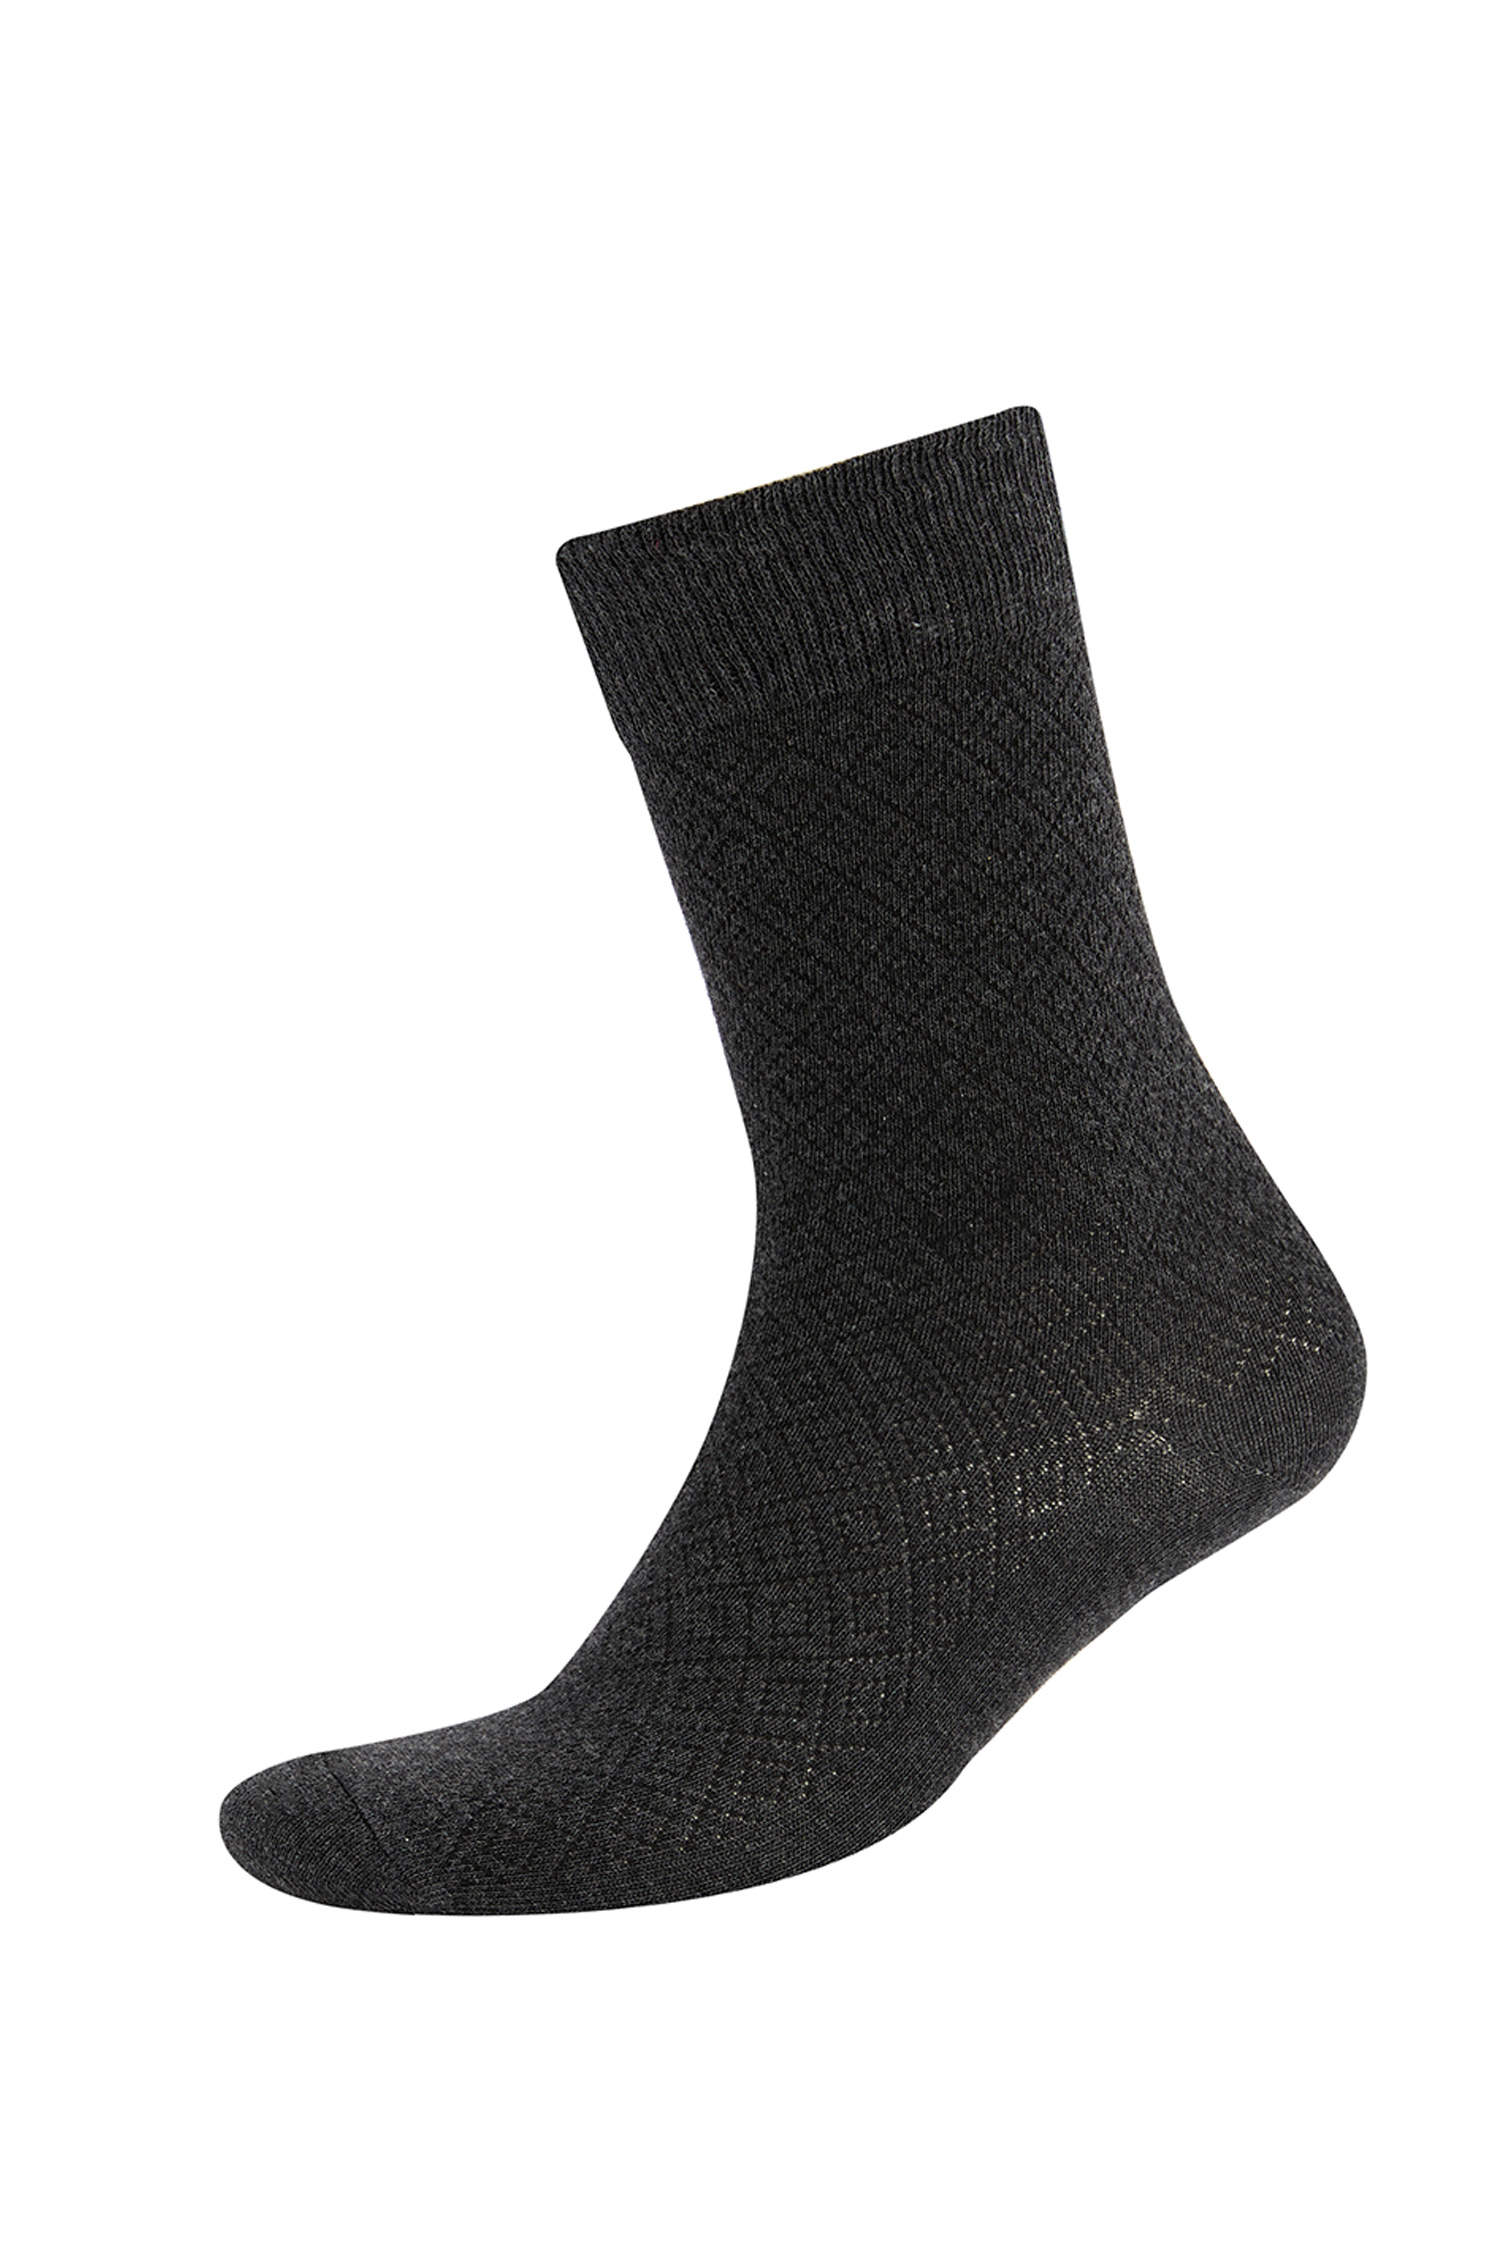 Defacto Erkek Pamuklu Desenli 3'lü Soket Çorap. 1